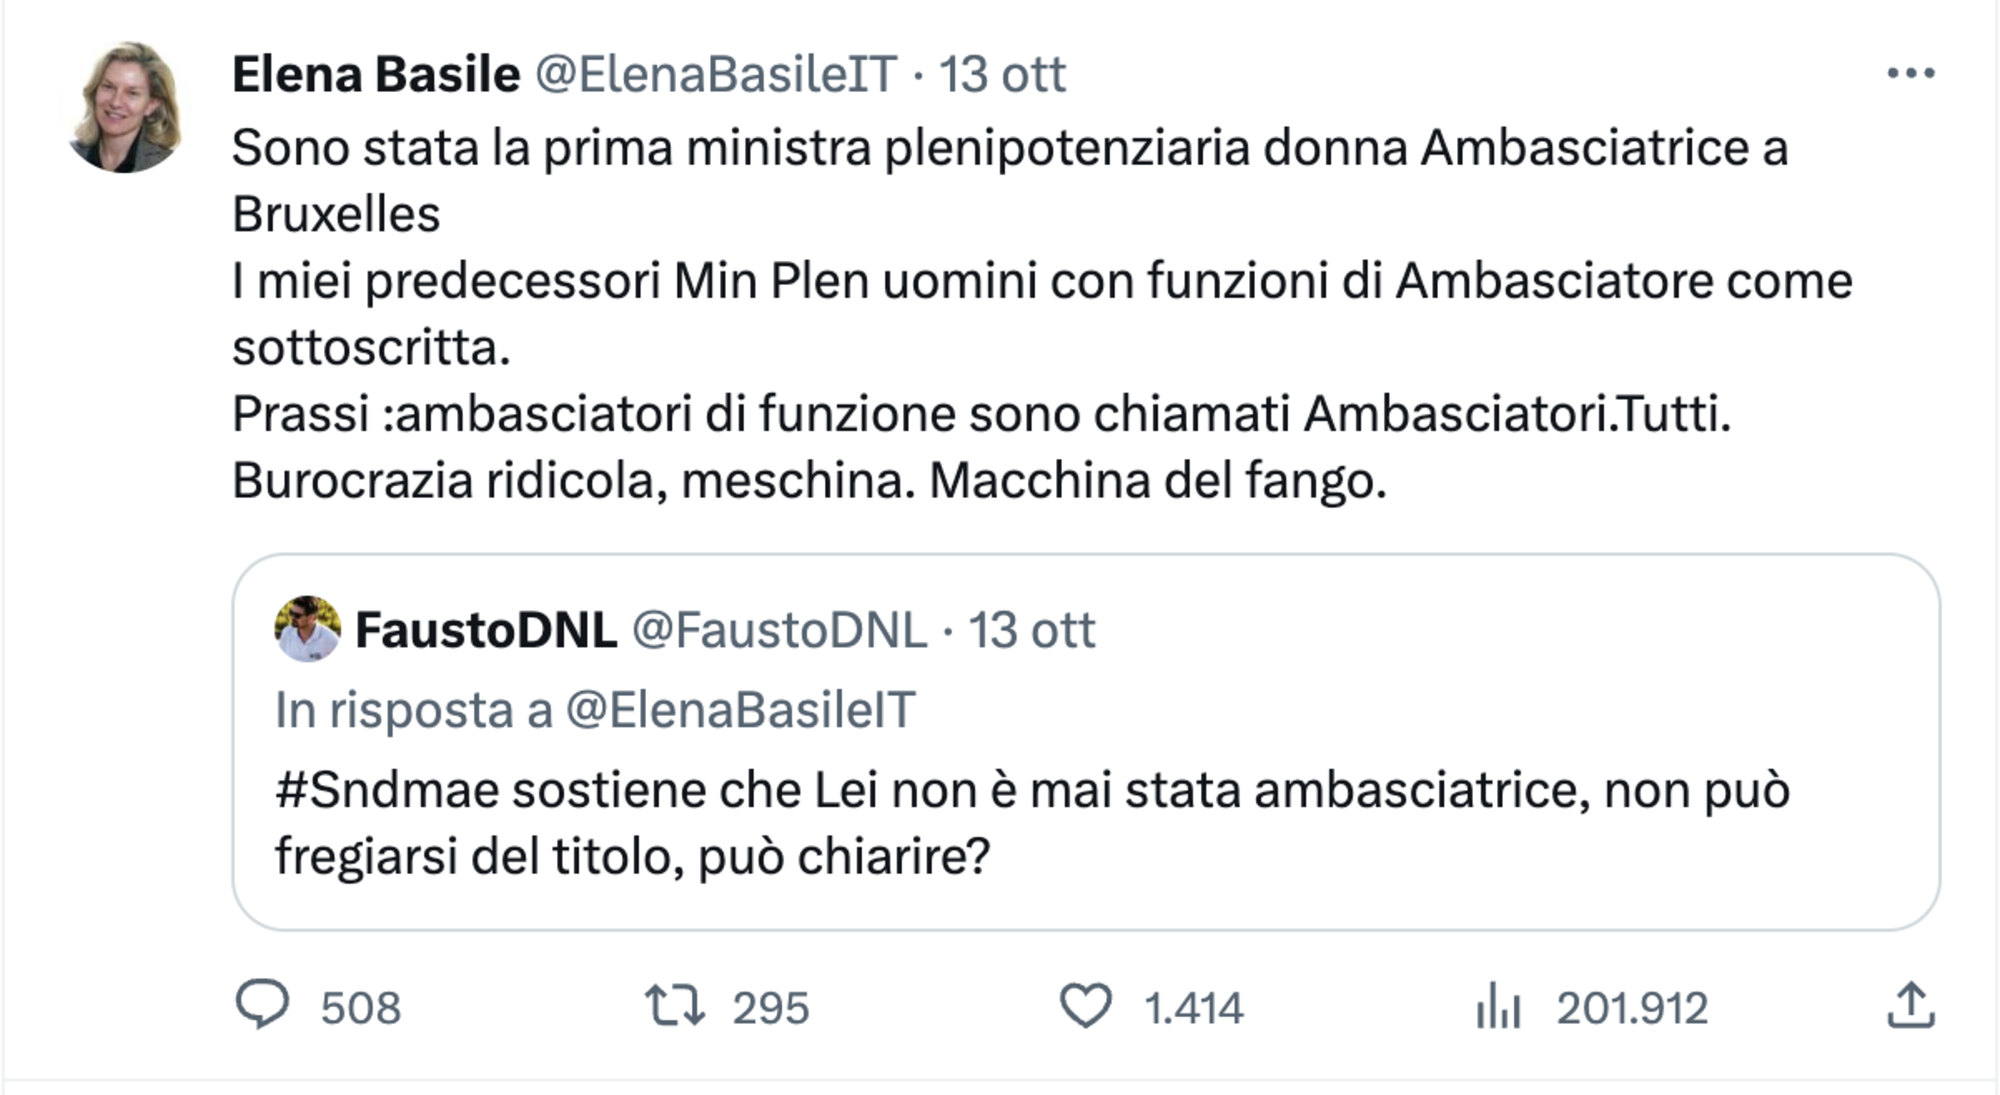 La risposta di Elena Basile